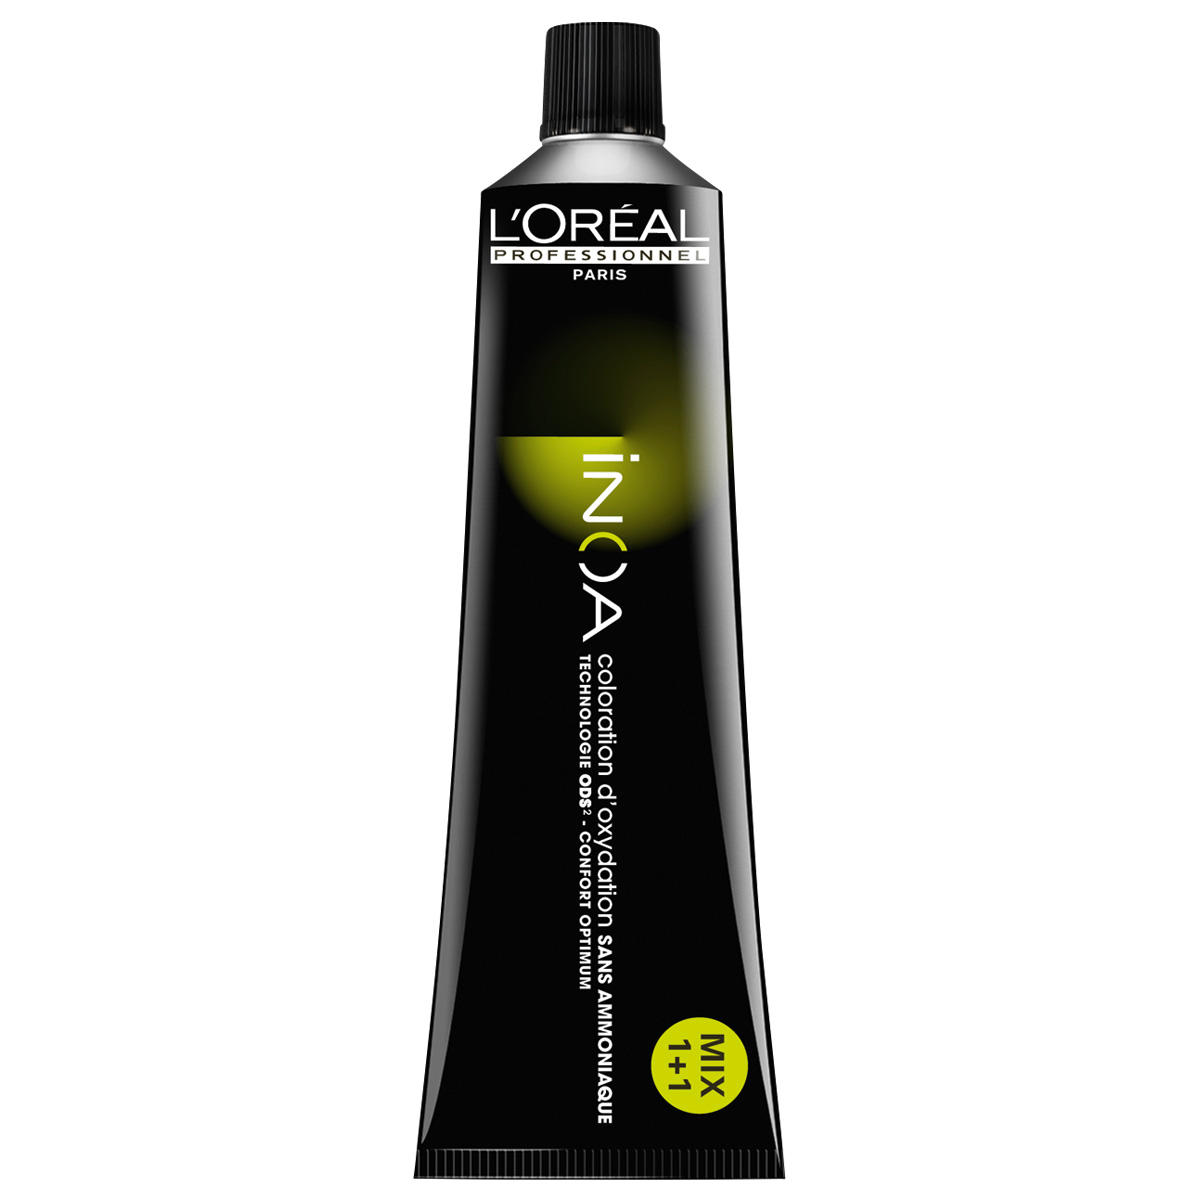 L'Oréal Professionnel Paris Coloration 5 Lichtbruin, tube 60 ml